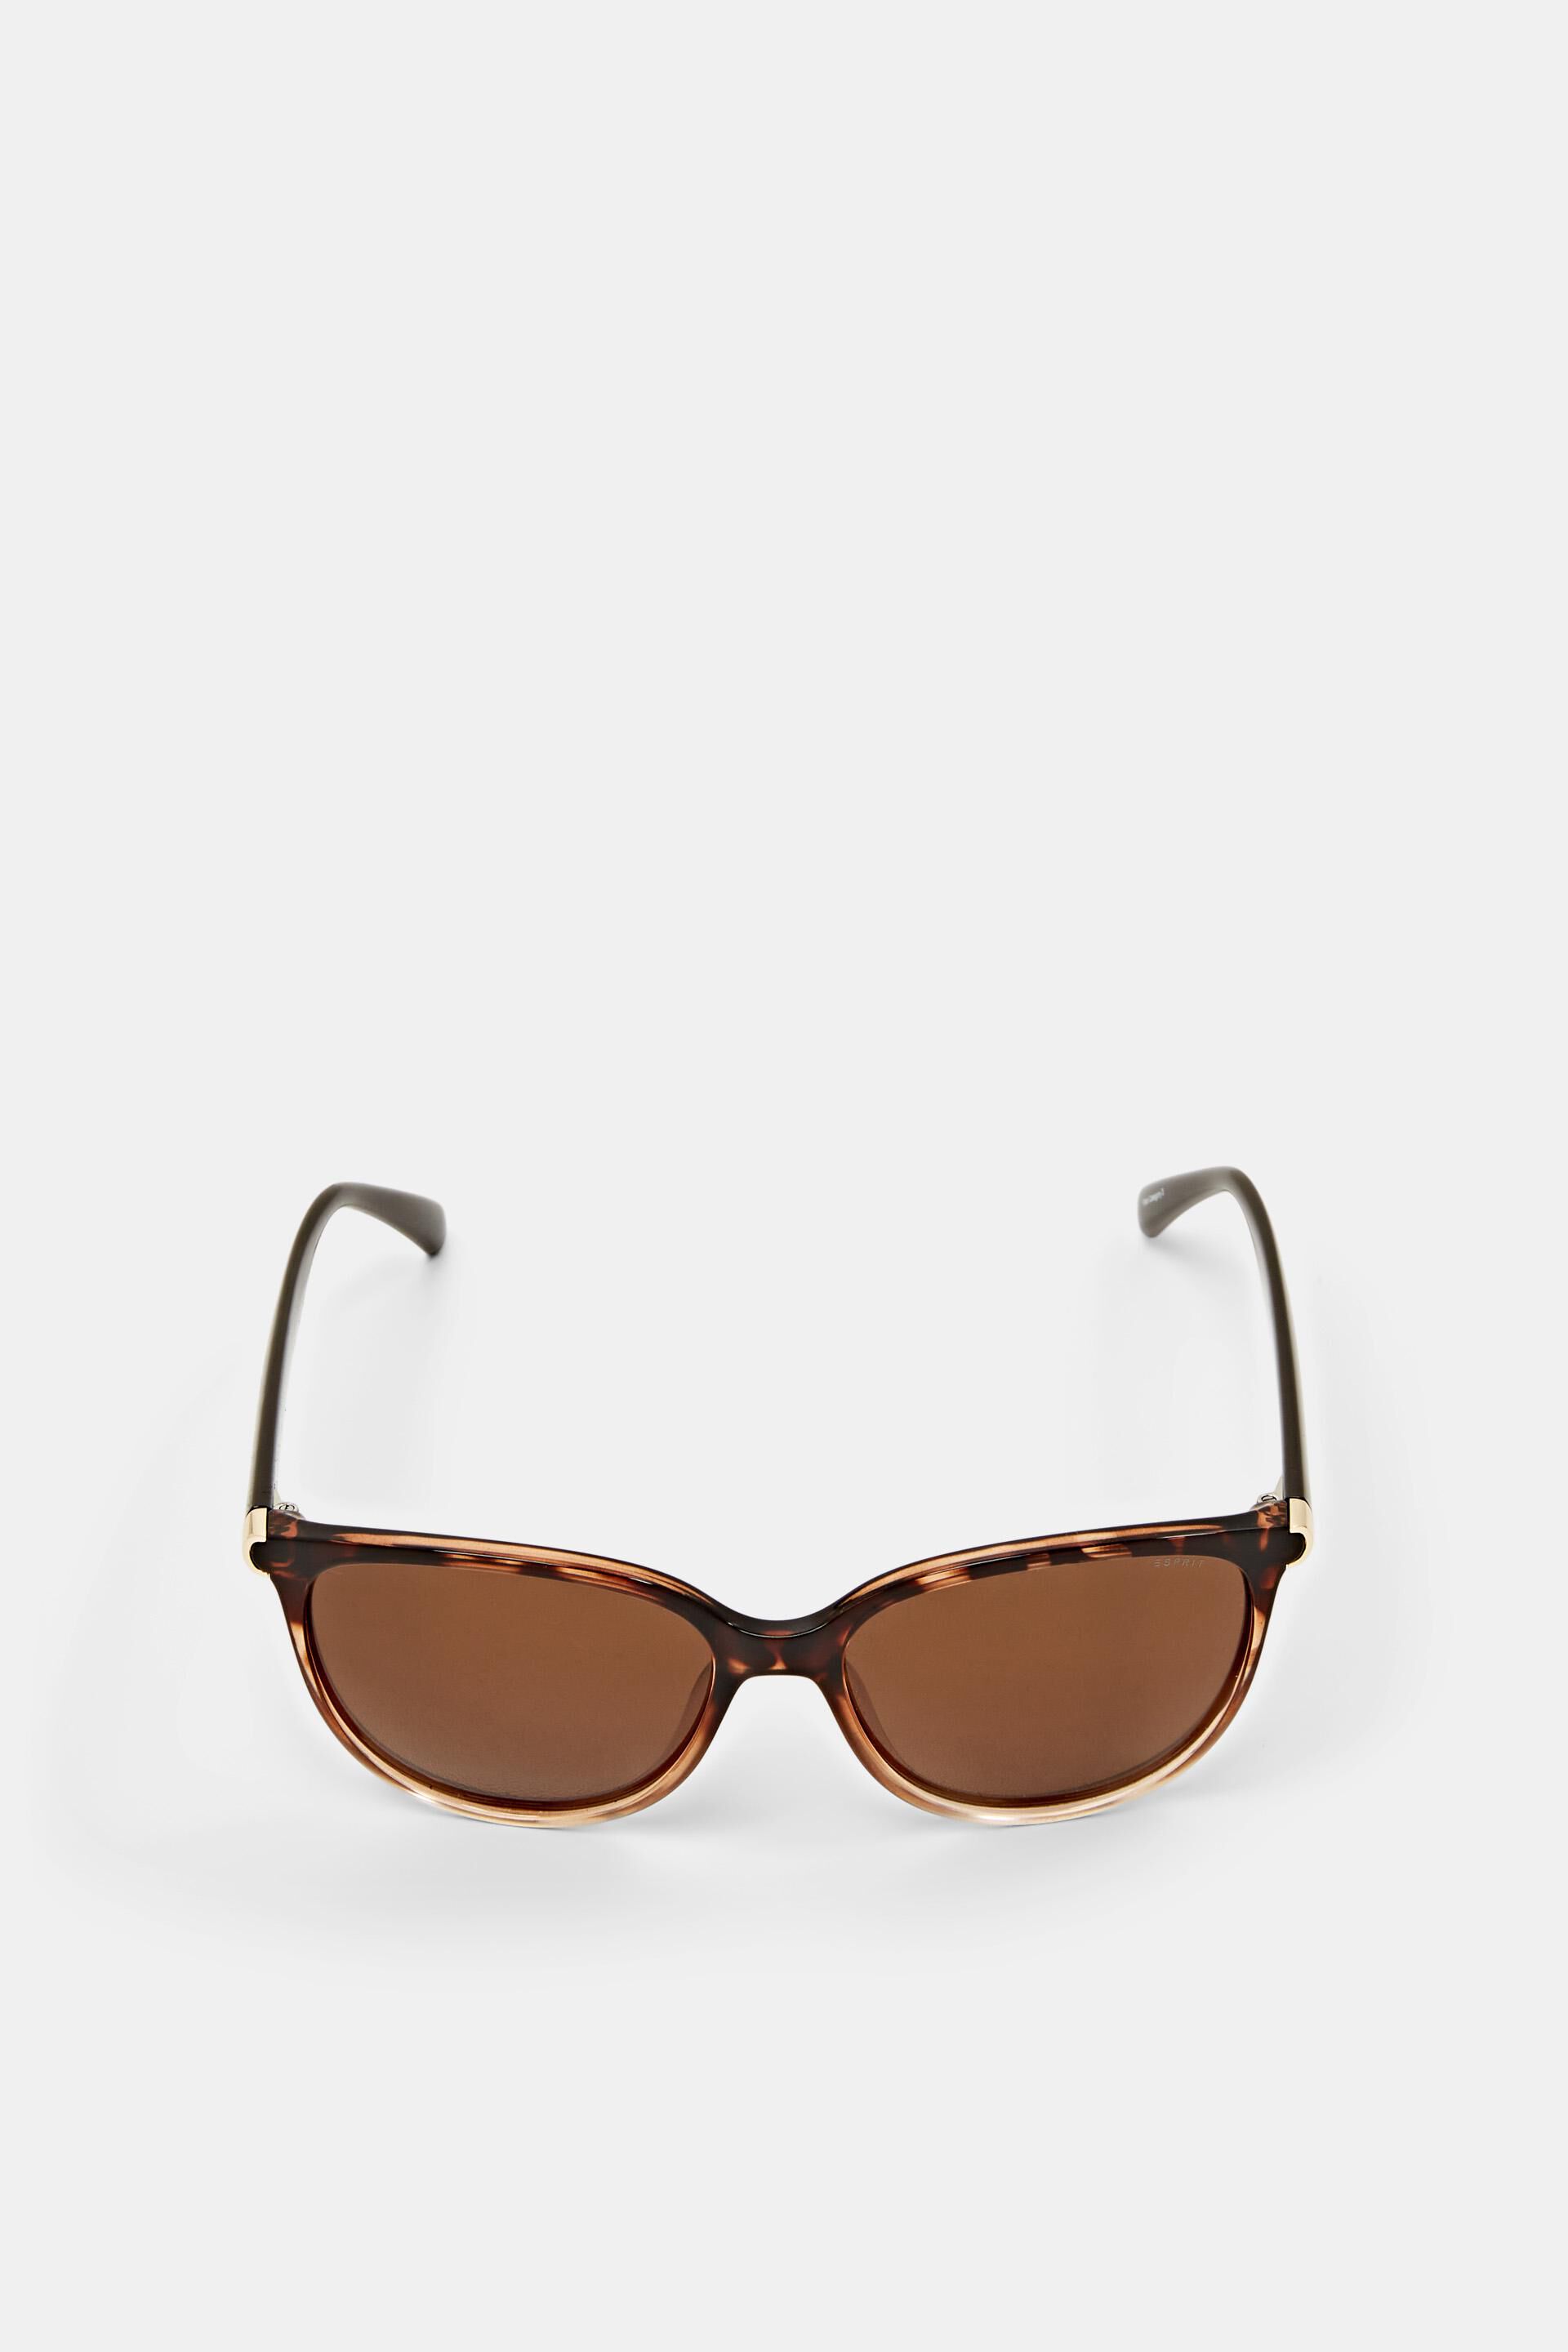 Esprit Sunglasses polarised lenses with